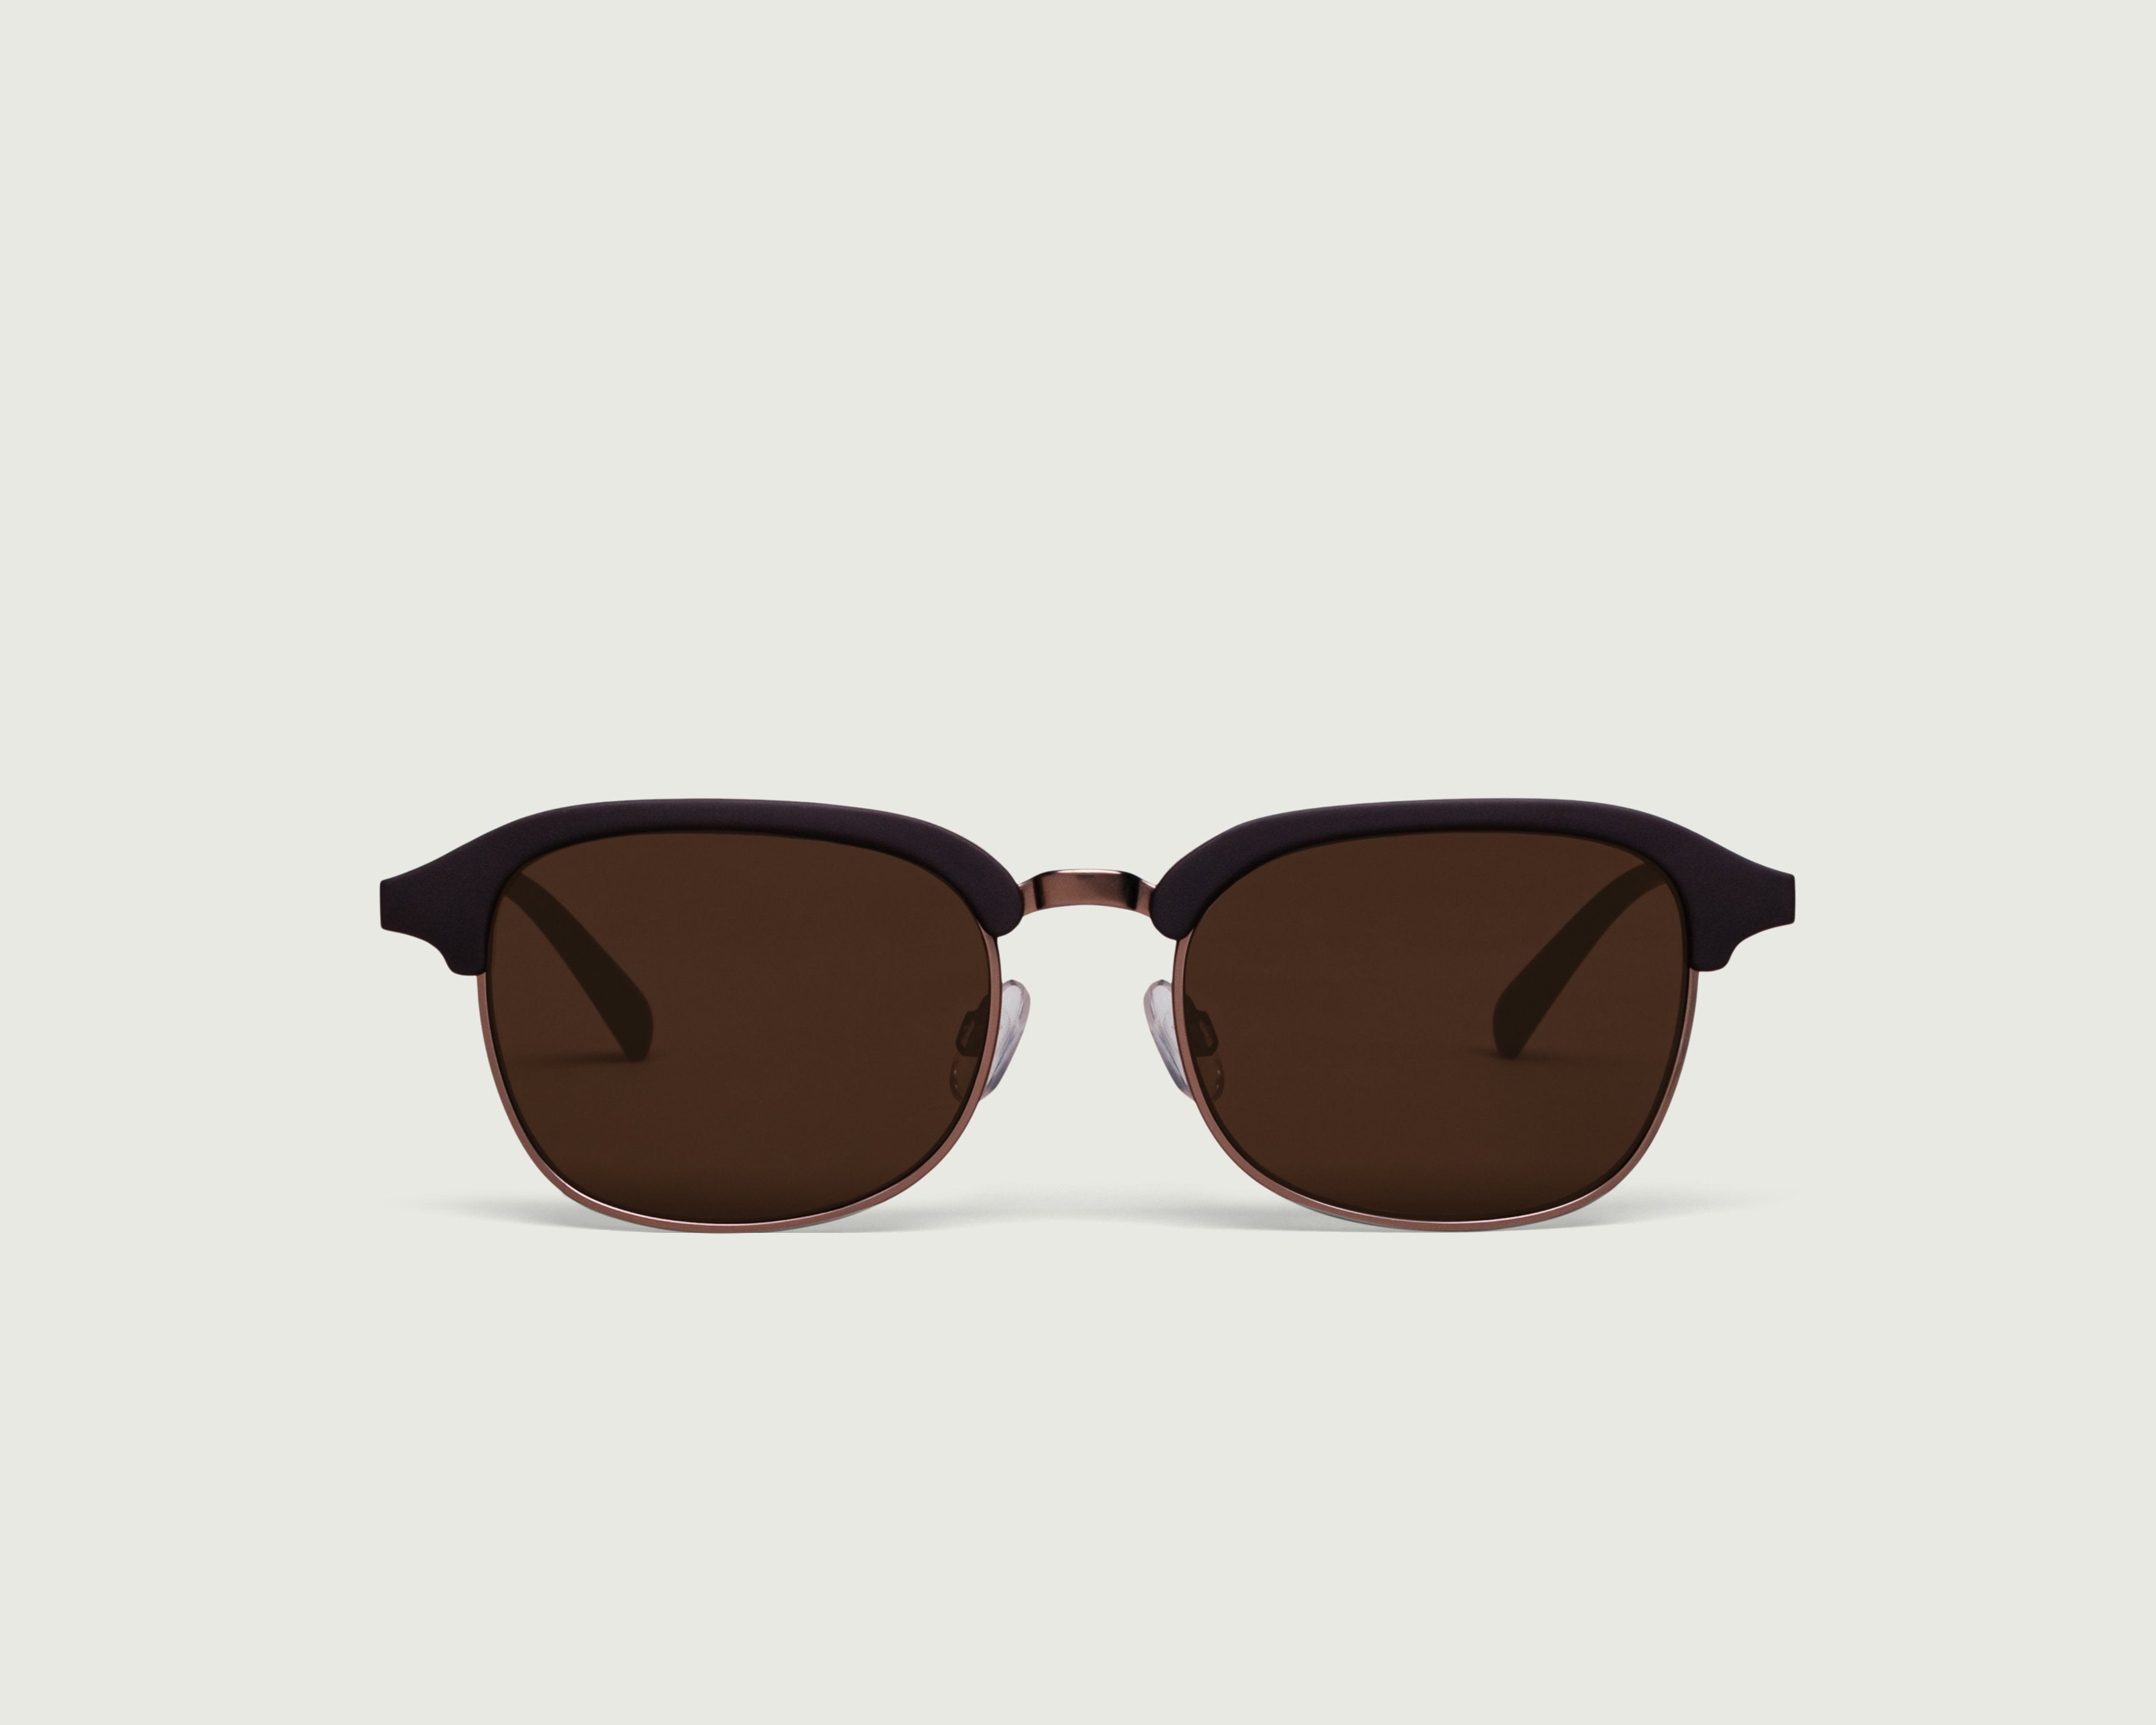 Sepia::Castro Sunglasses browline brown plastic metal front